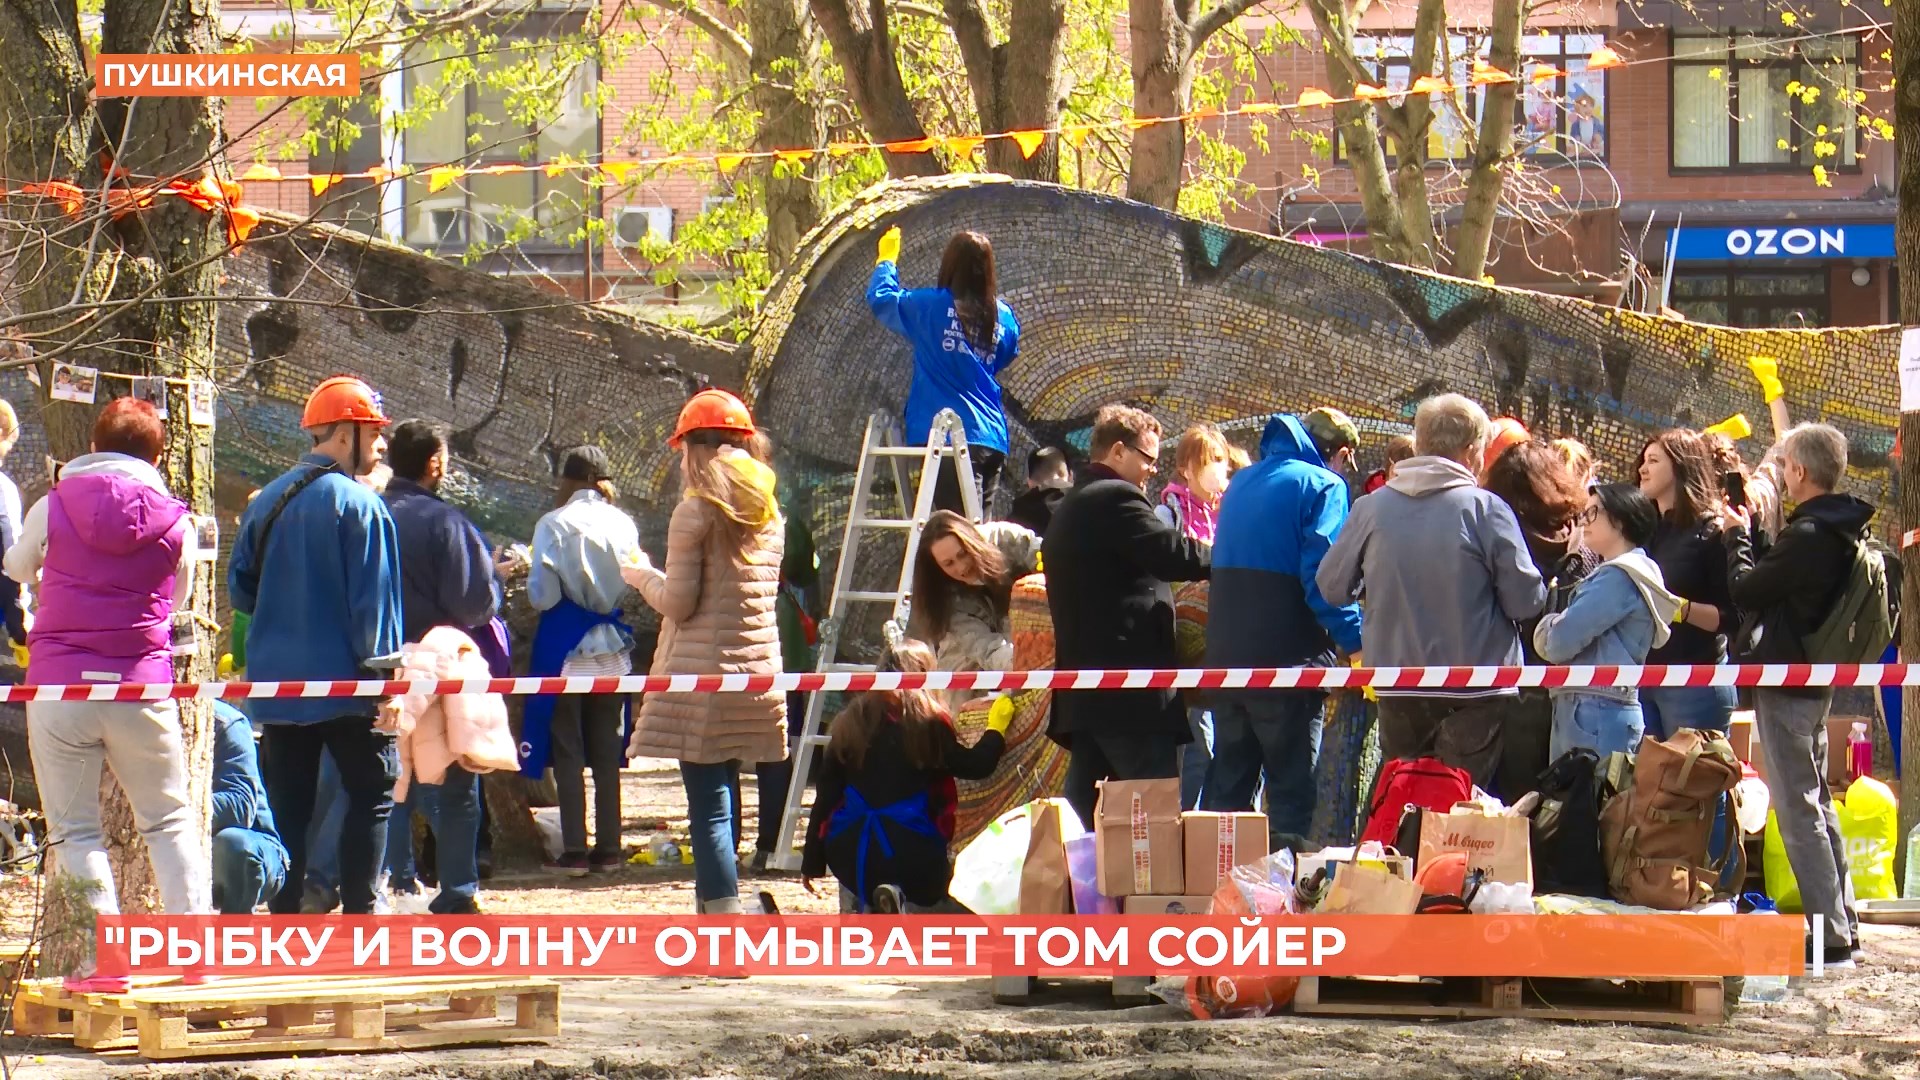 Рыбку спасет Том Сойер: Ростовчане приступили к реконструкции скульптуры «Рыбка и волна»